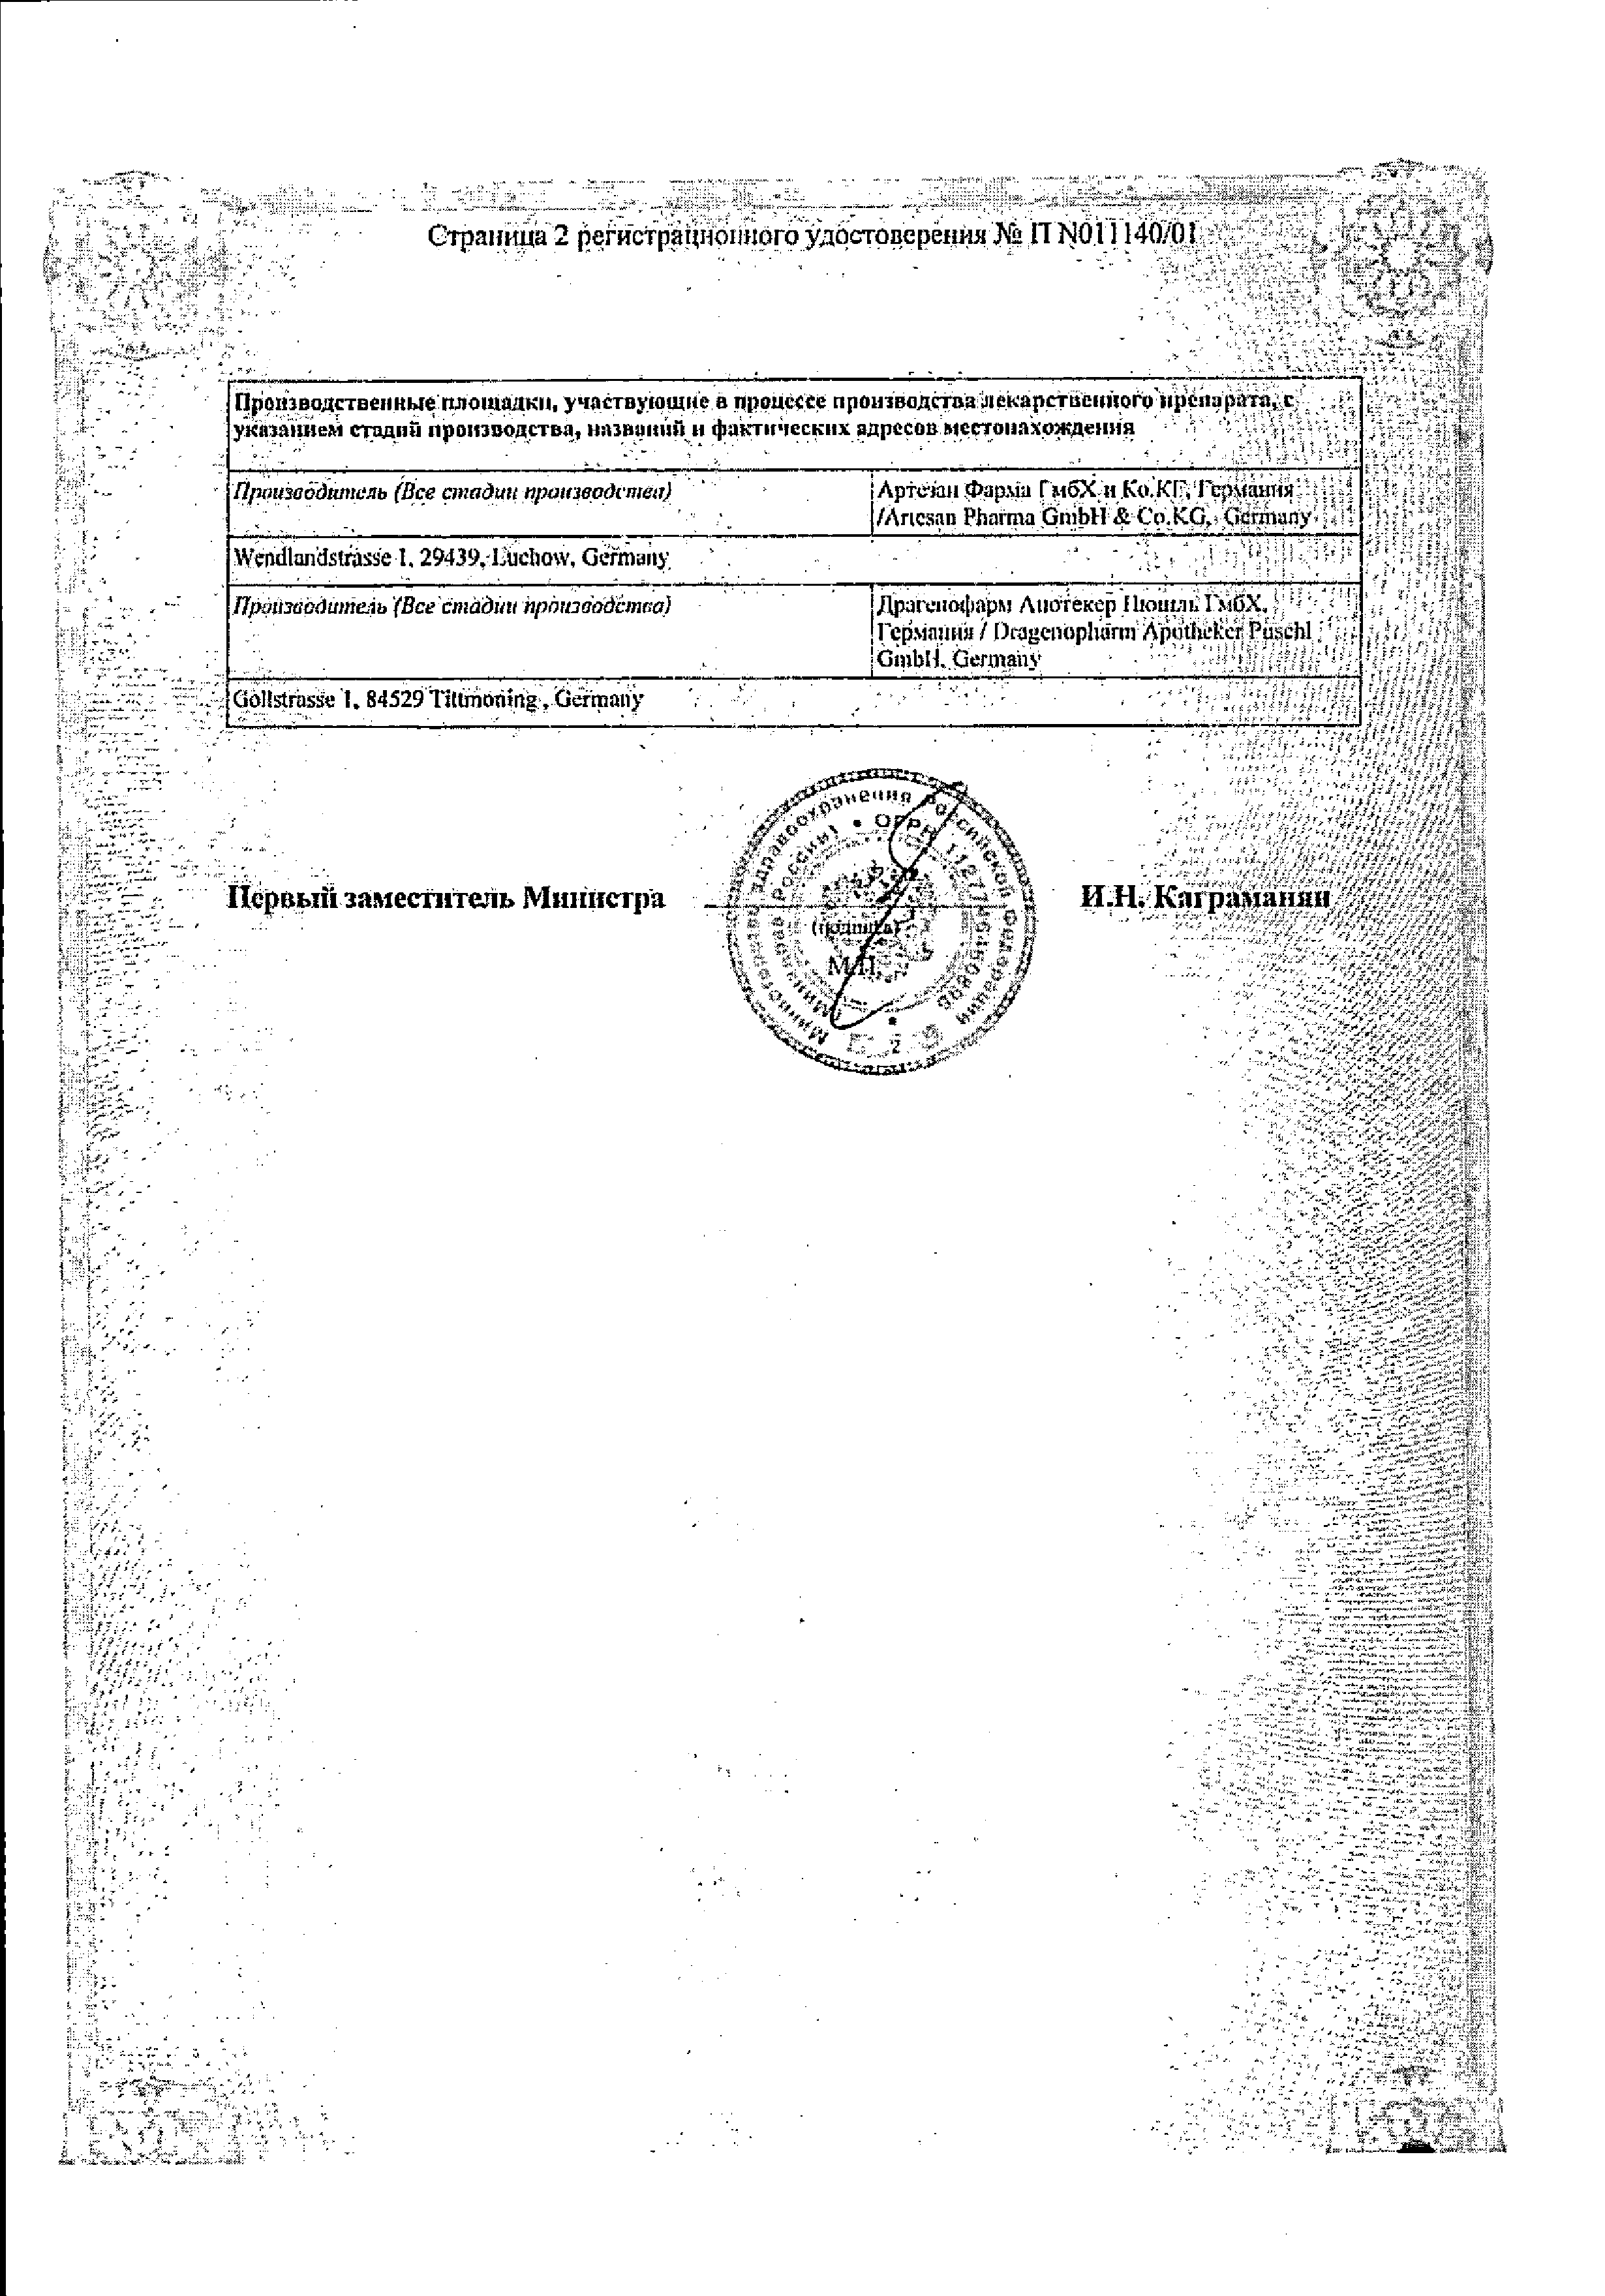 Тиогамма сертификат